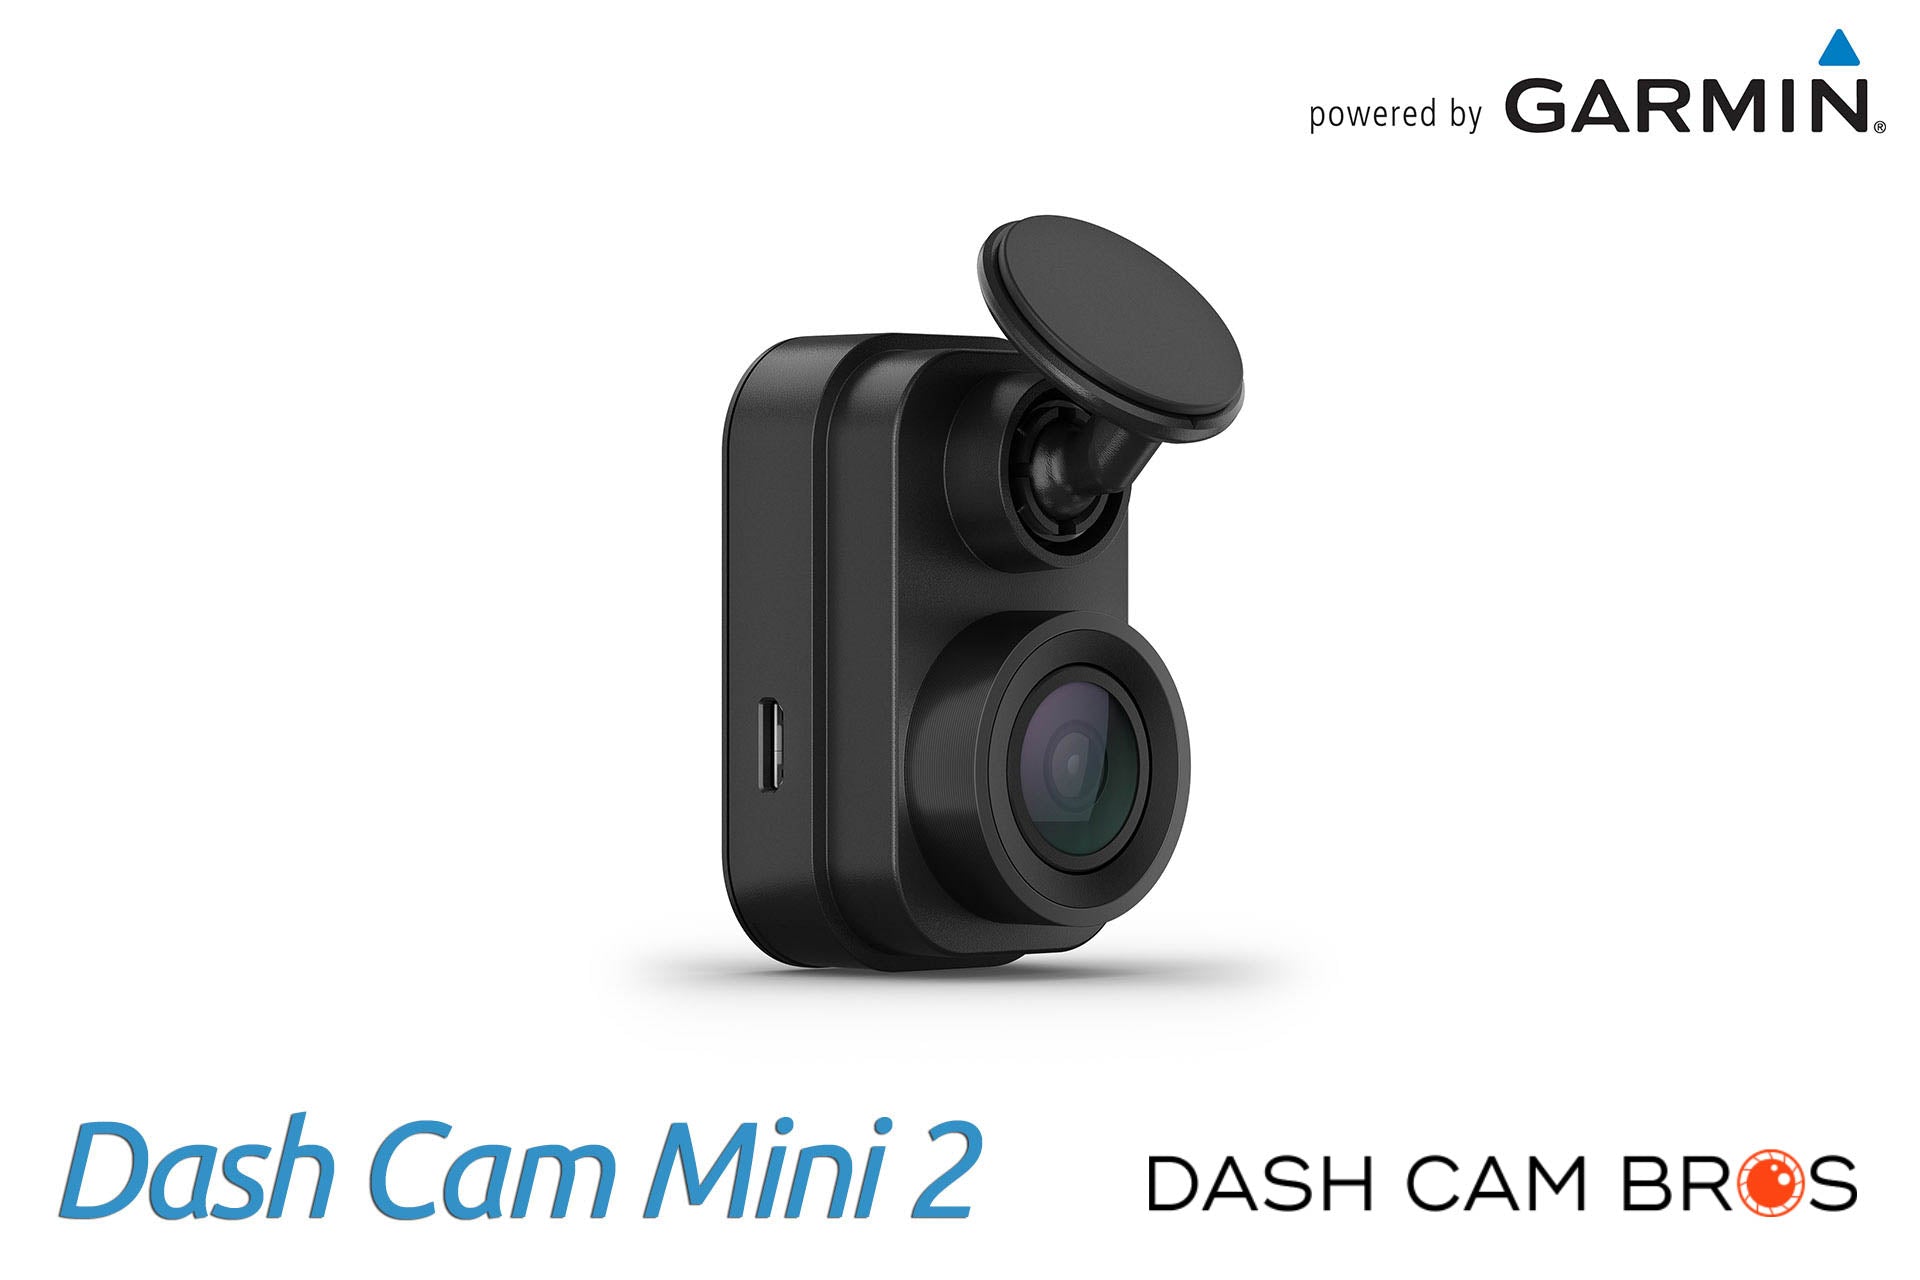 Garmin Dash Cam™ Live, Dash Cam